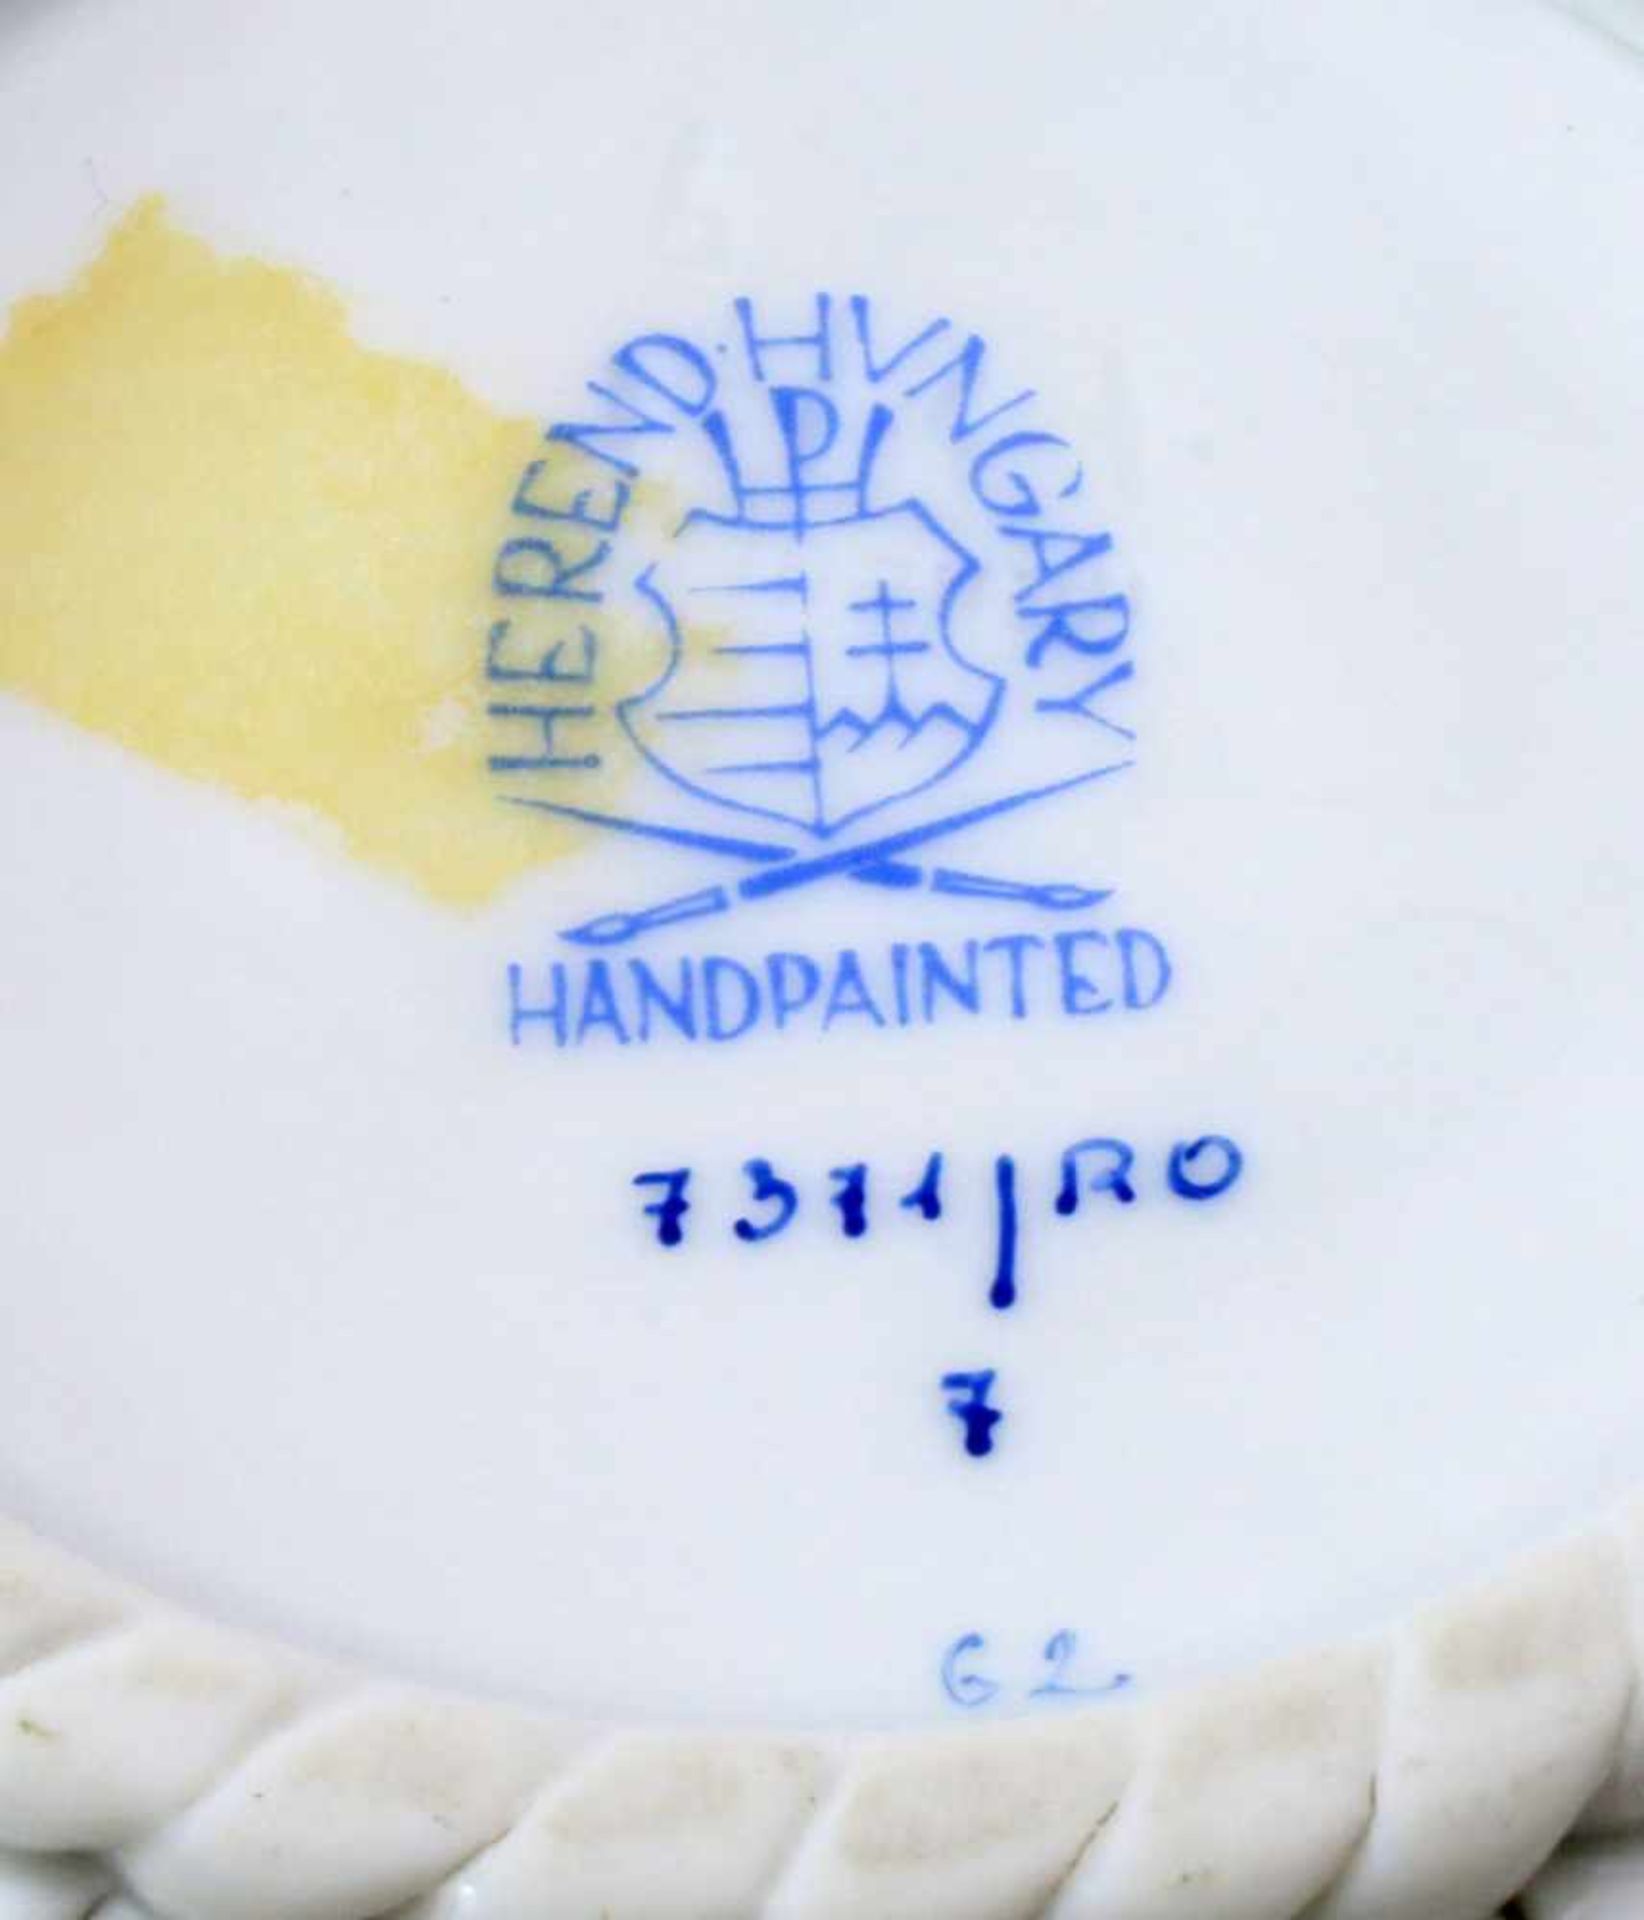 Porzellanschale Herend "Rothschild"Flechtkörbchen, Vogeldekor, Ø 13 cm. - Bild 3 aus 3